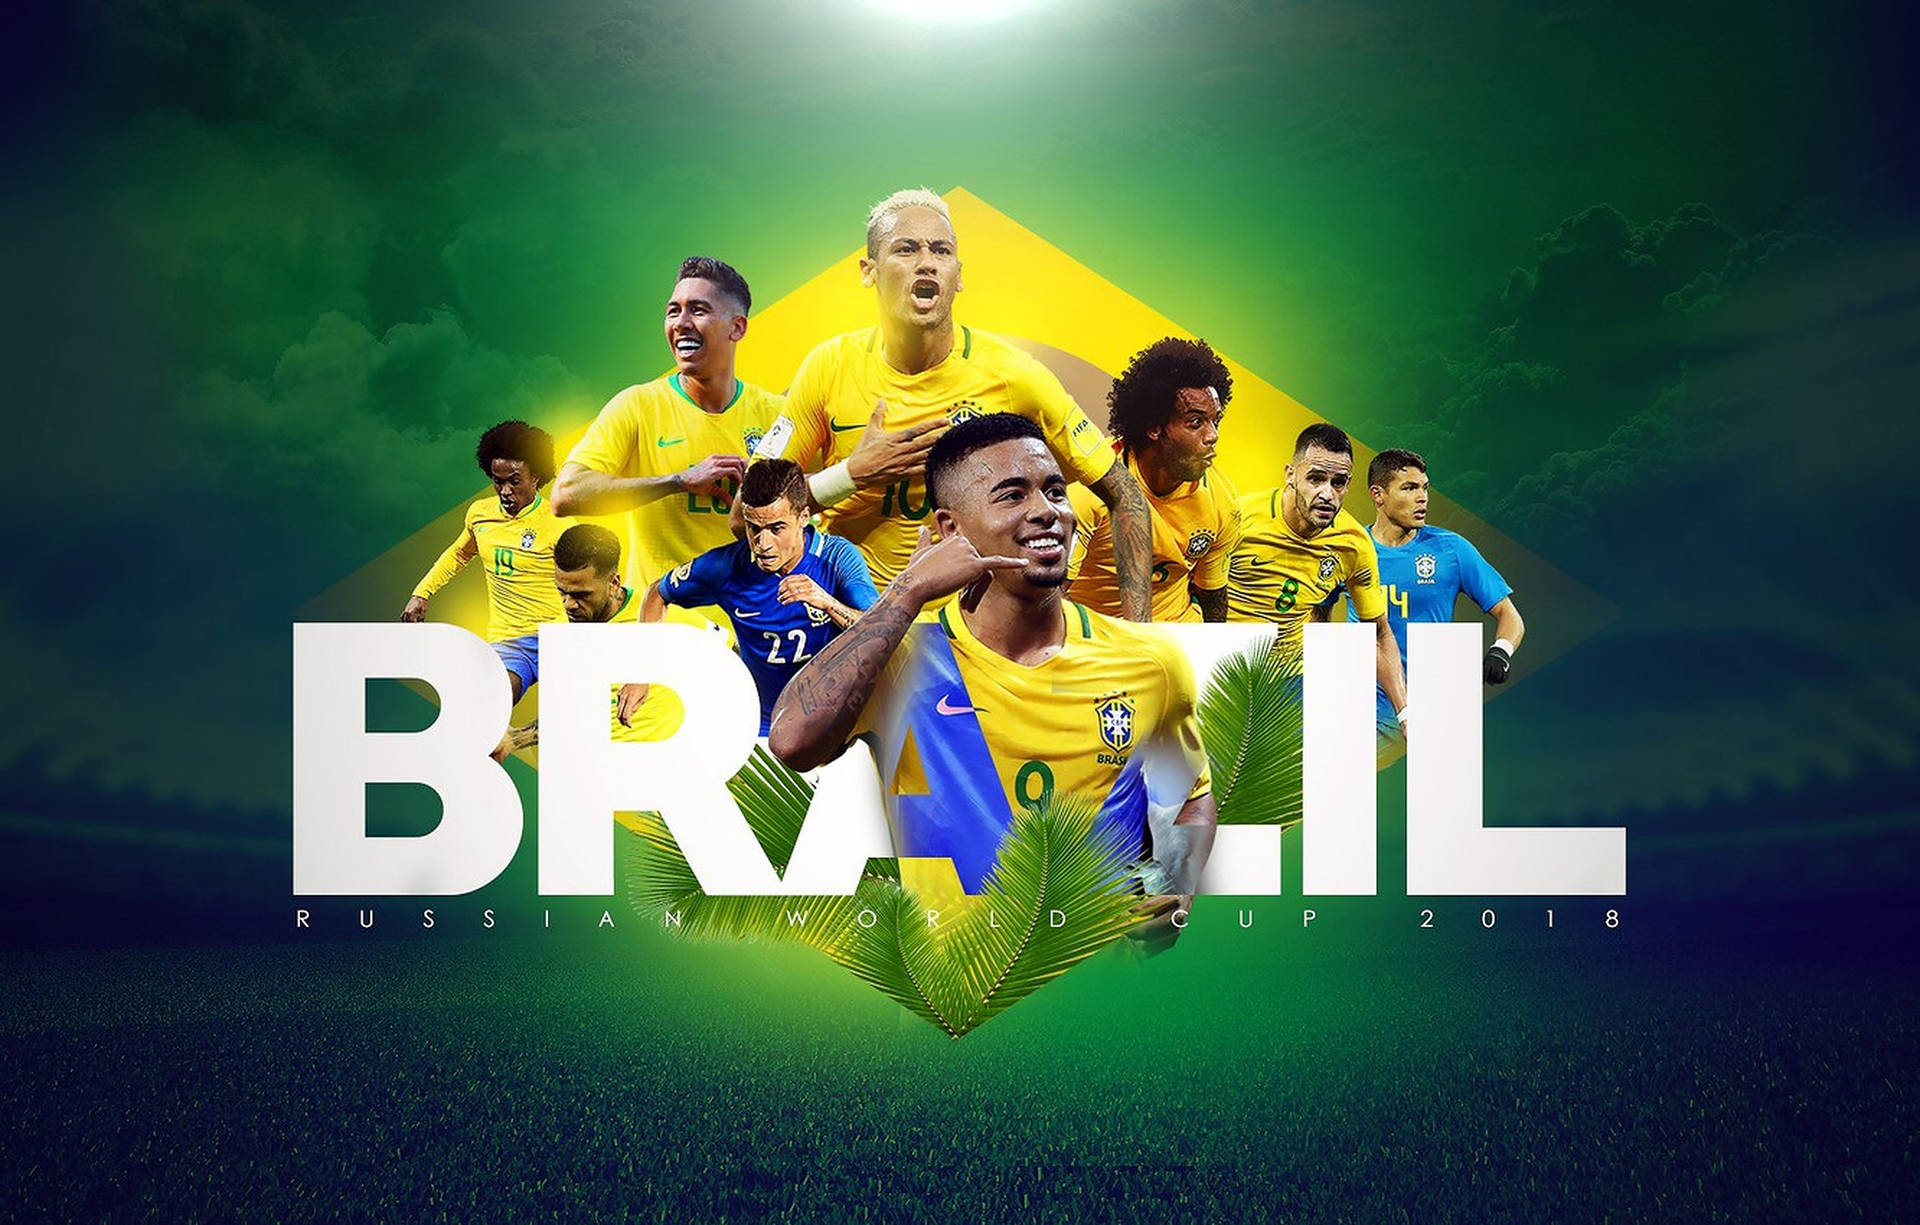 Brasiliens Fodboldlandshold Wallpaper